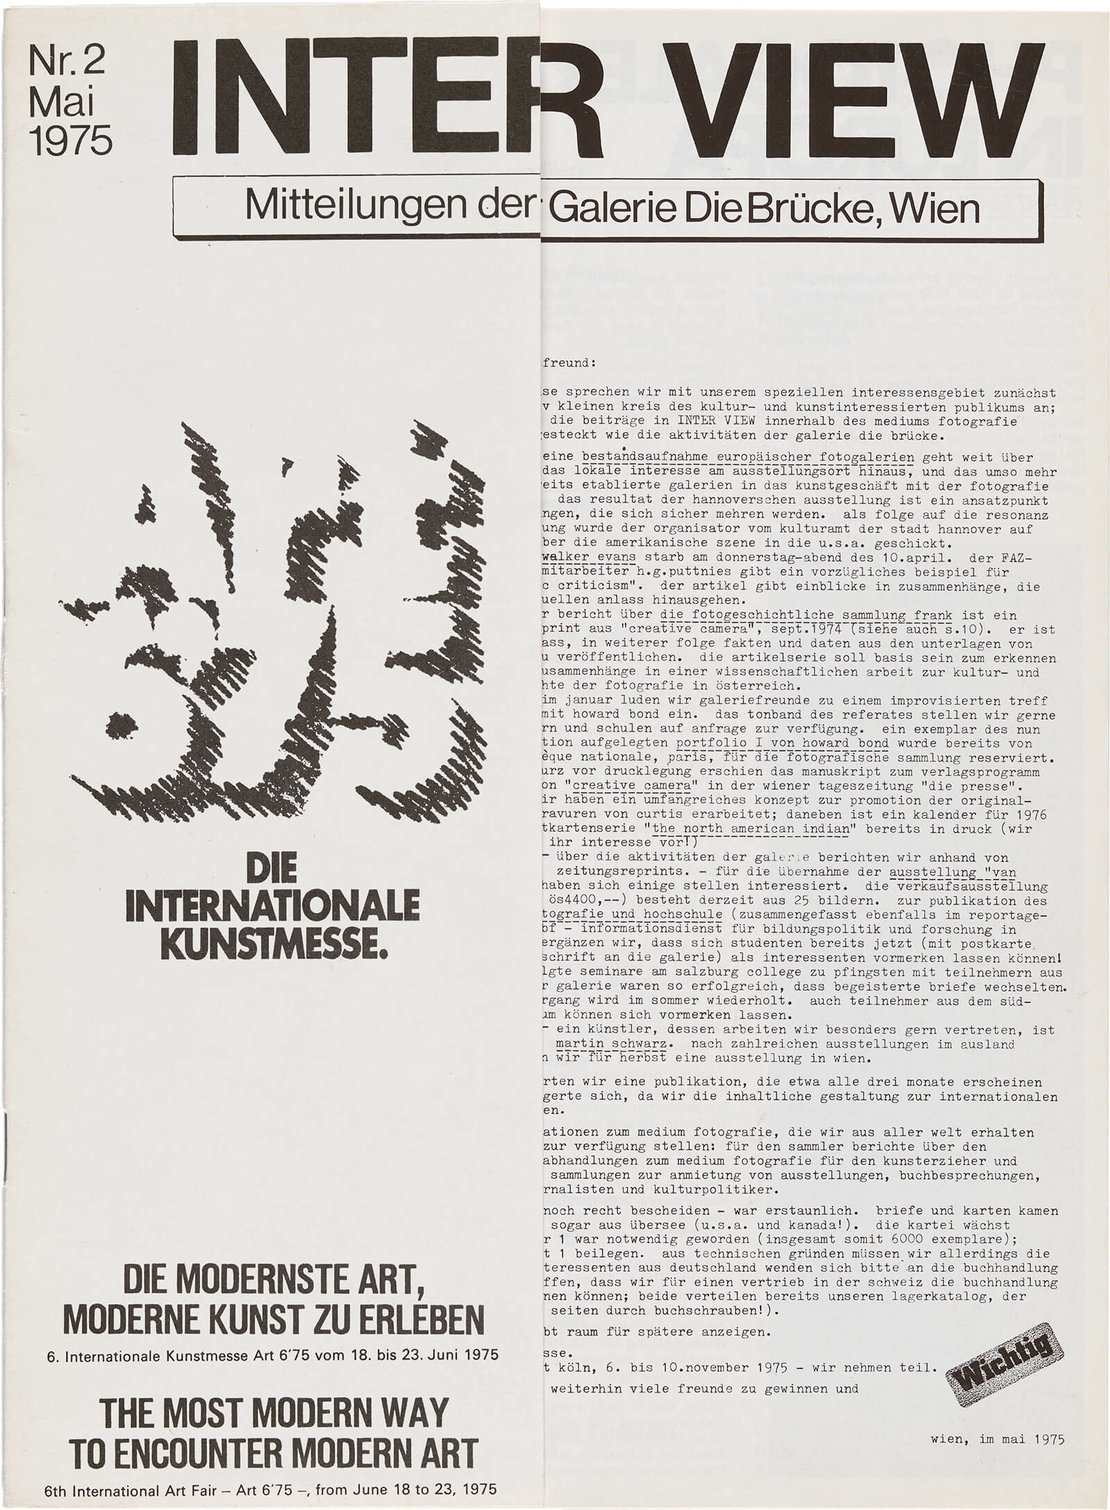 Inter View. Mitteilungen der Galerie Die Brücke, Bd. 2, 1975, Foto: TimTom 